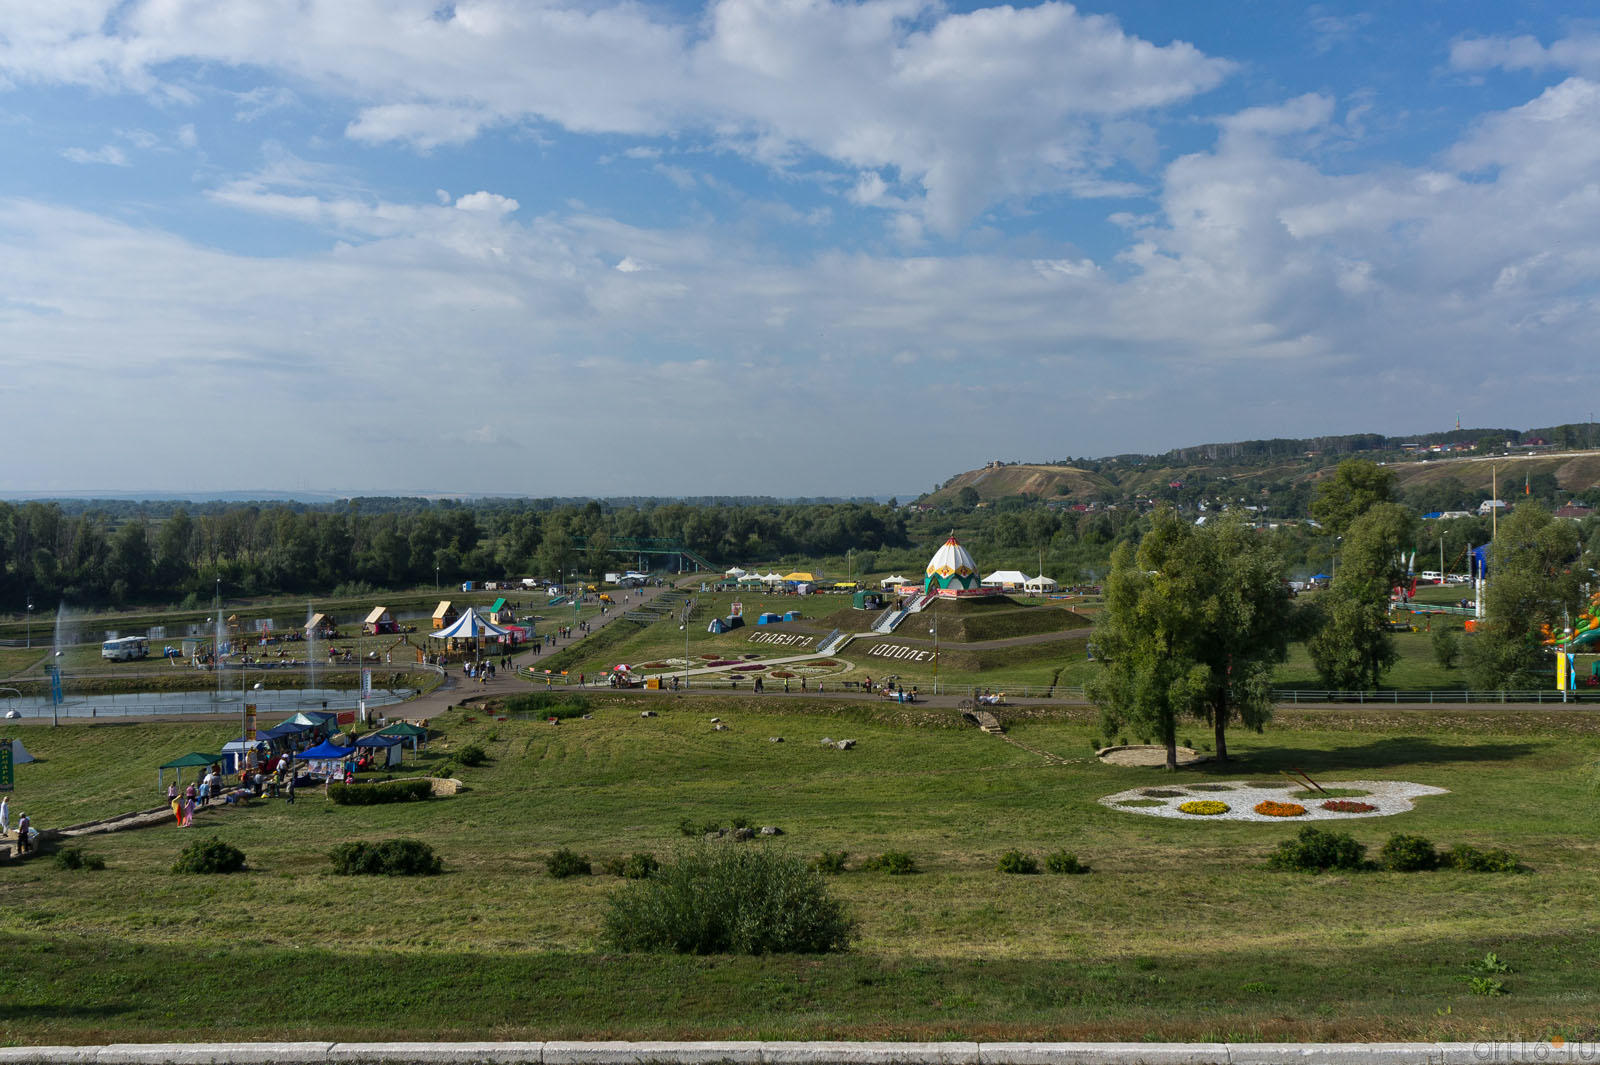 Шишкинские пруди и Чертово городище::Спасская ярмарка в Елабуге. 19-21 августа 2011